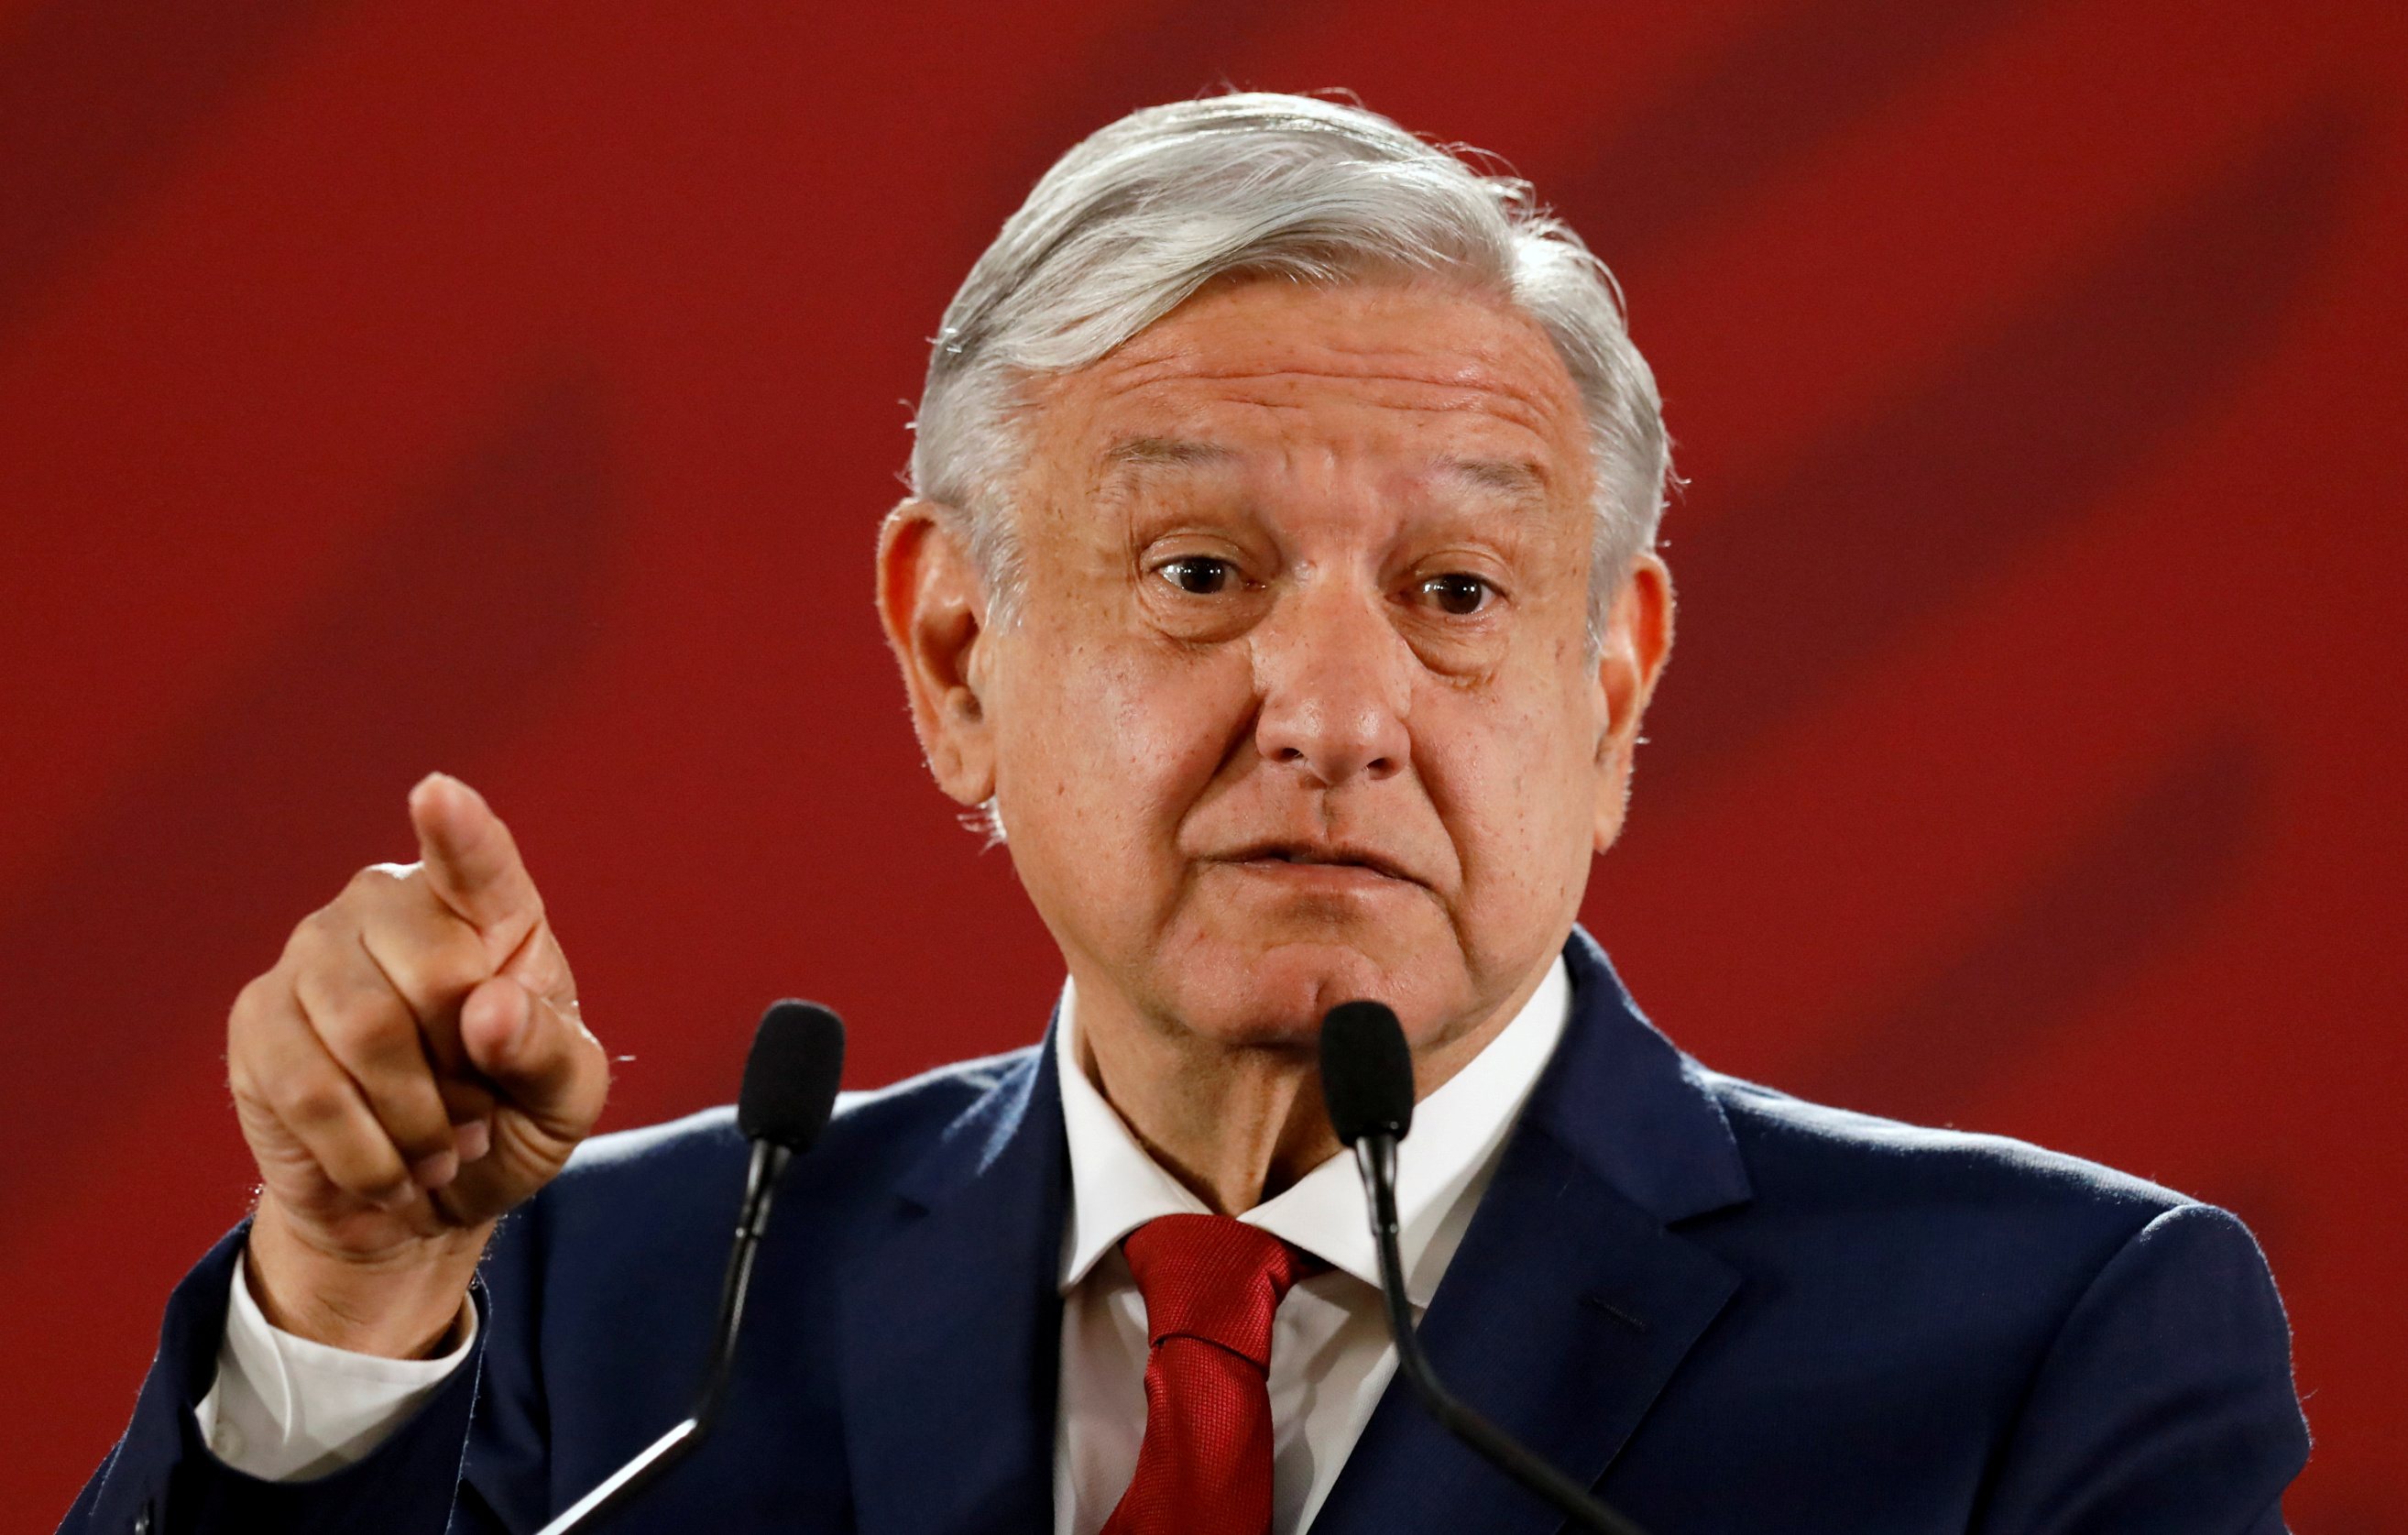 López Obrador se acerca a los evangélicos y desafía la férrea tradición laica mexicana